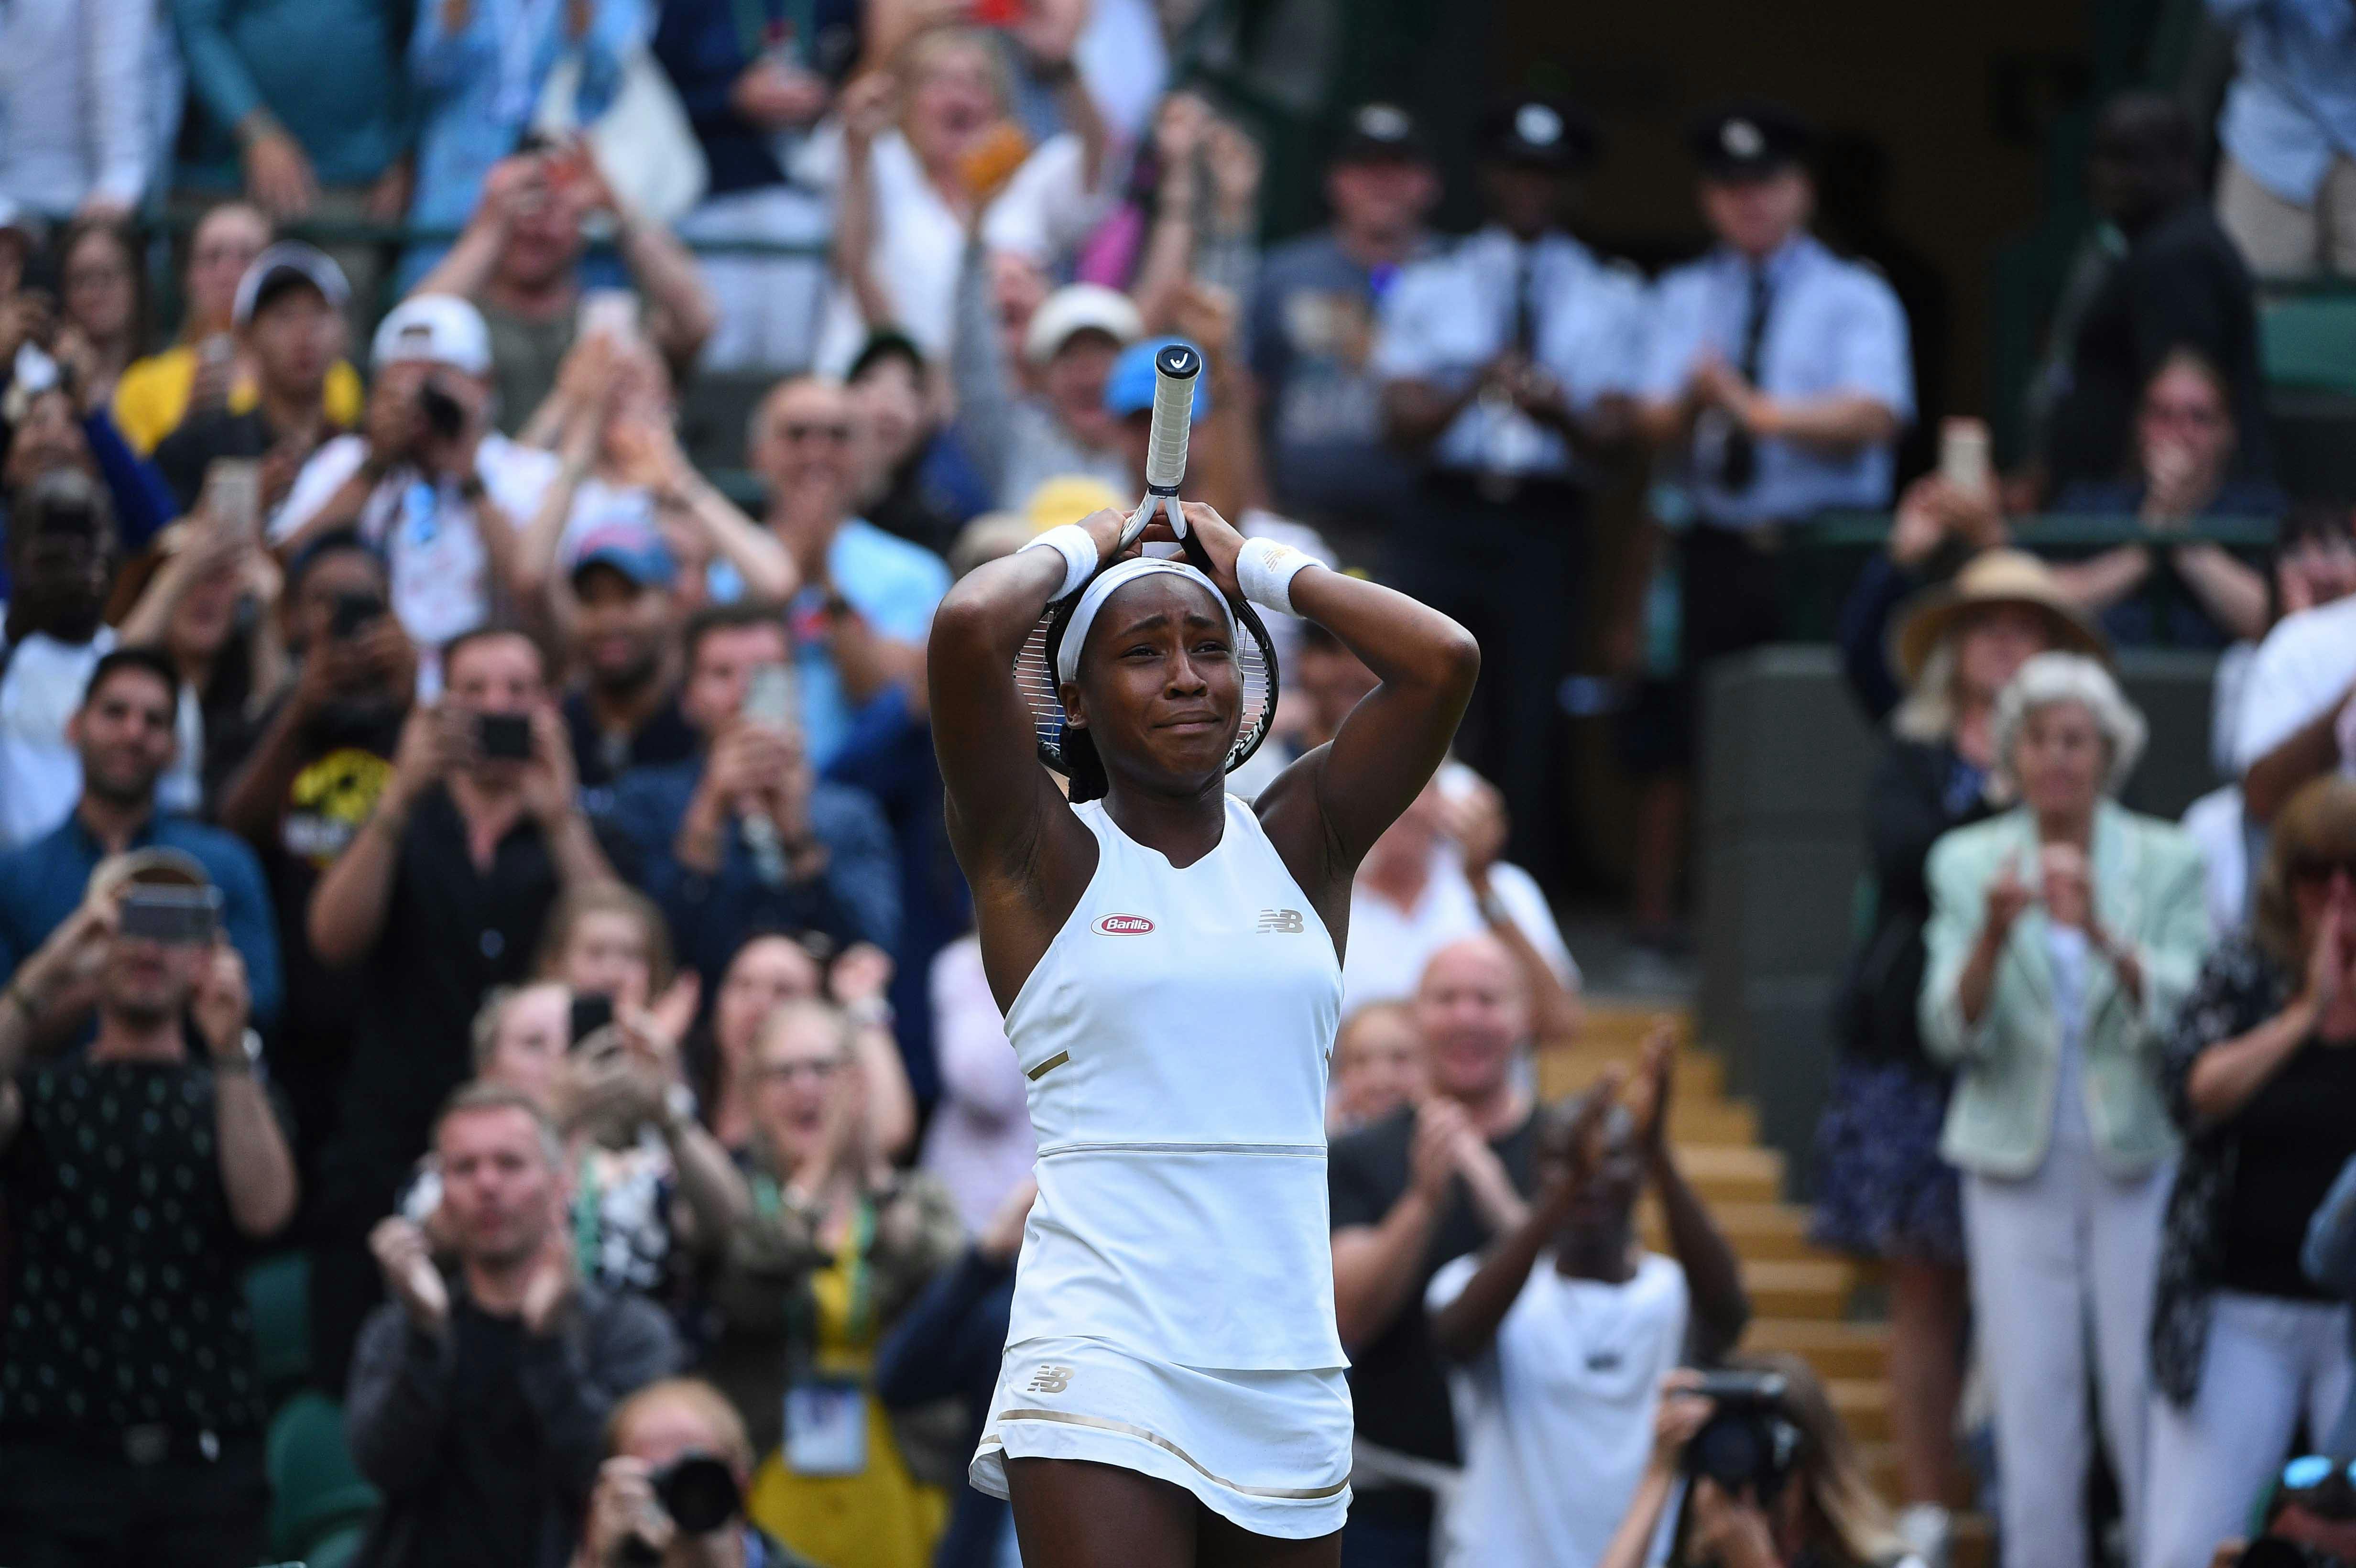 Cori Gauff crying out of joy after defeating Venus Williams at Wimbledon 2019